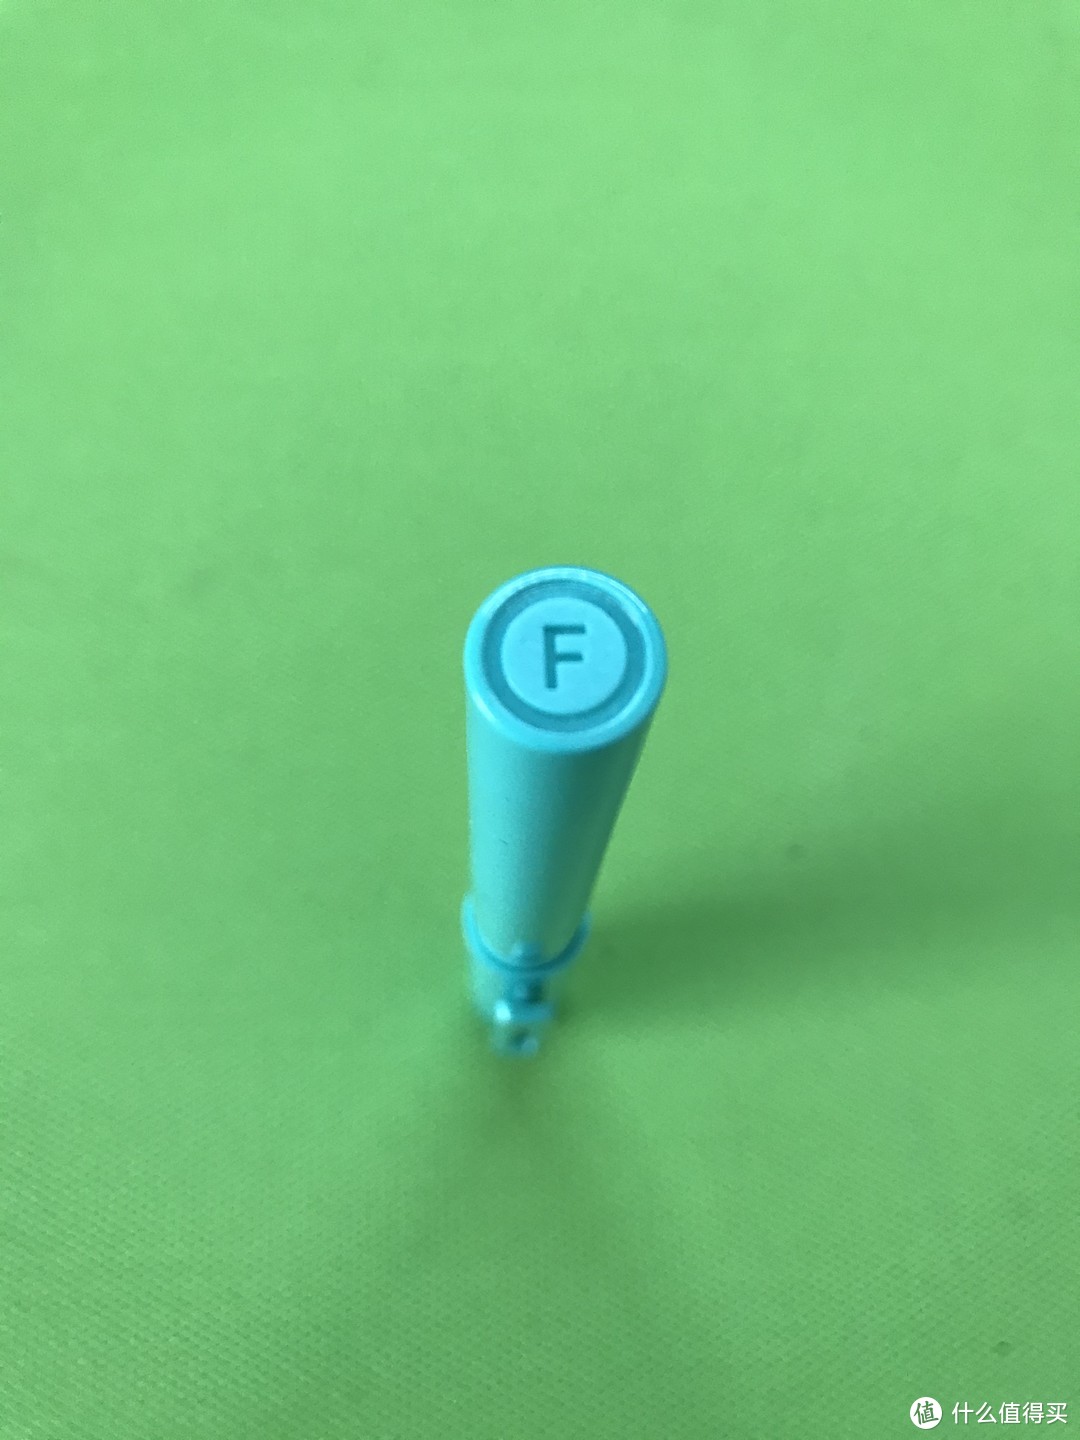 F代表的不是笔尖，代表是钢笔